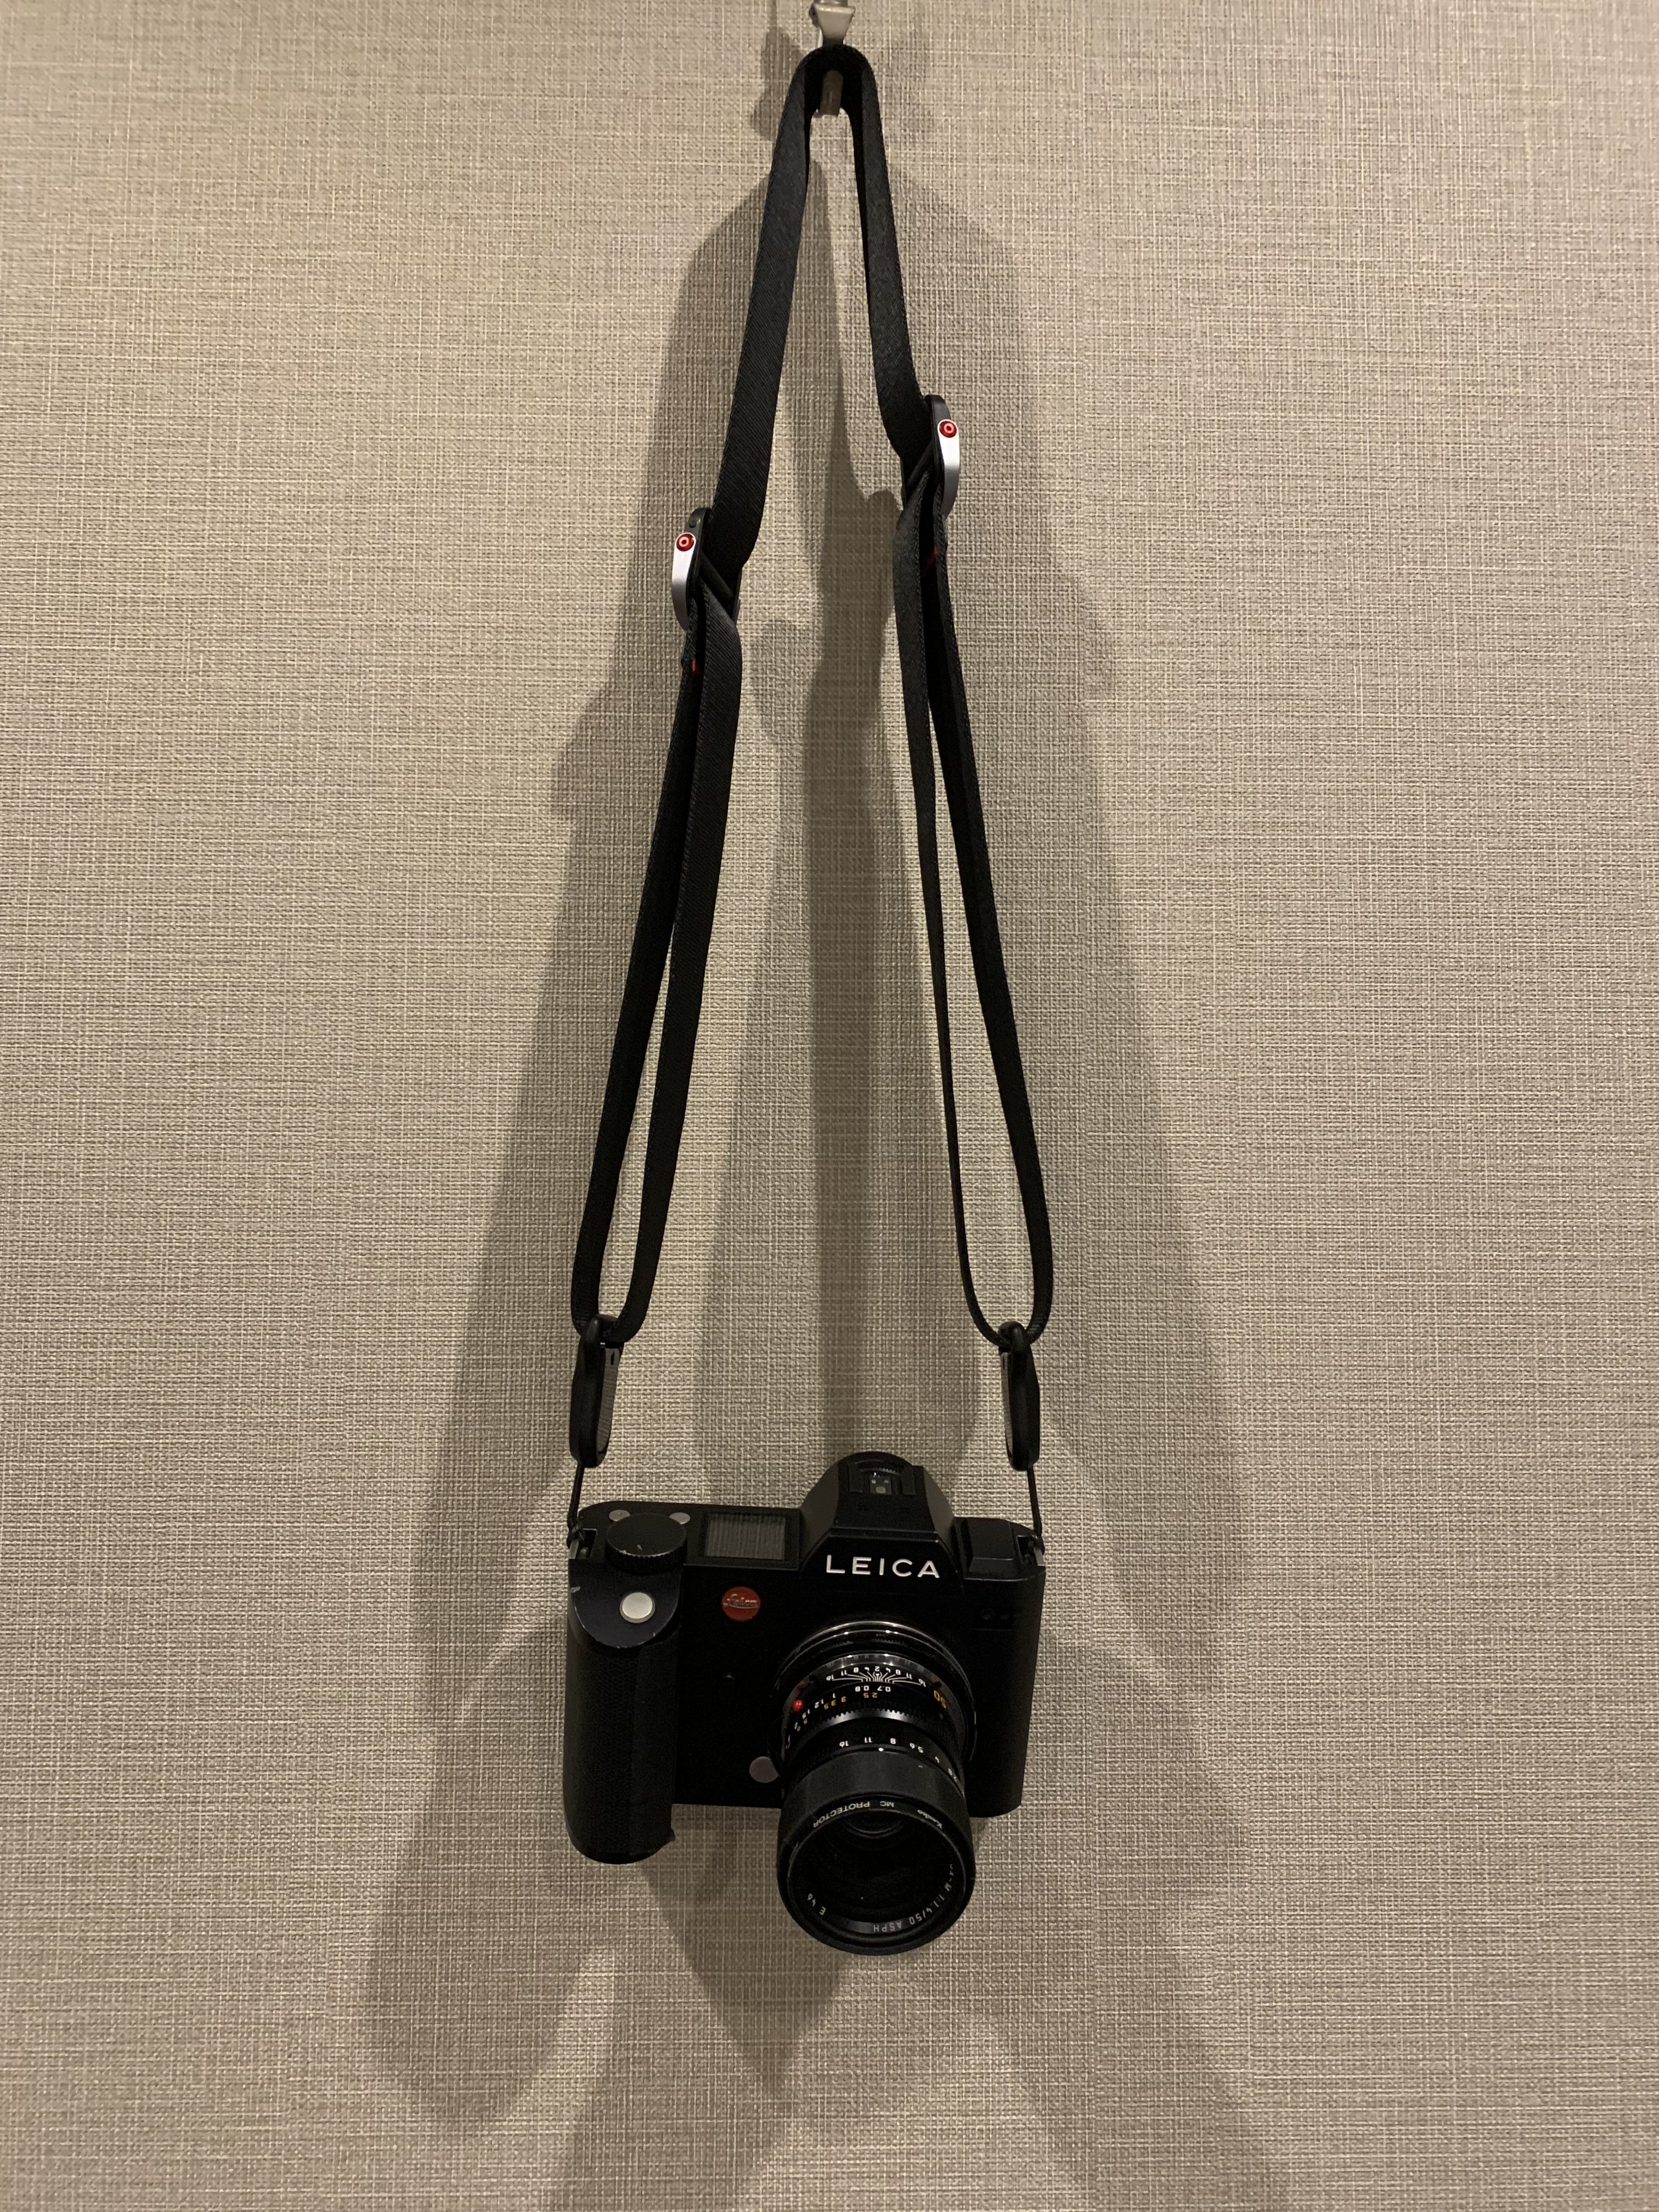 SLその6：Leica SL にはピークデザインのストラップがよく似合う 